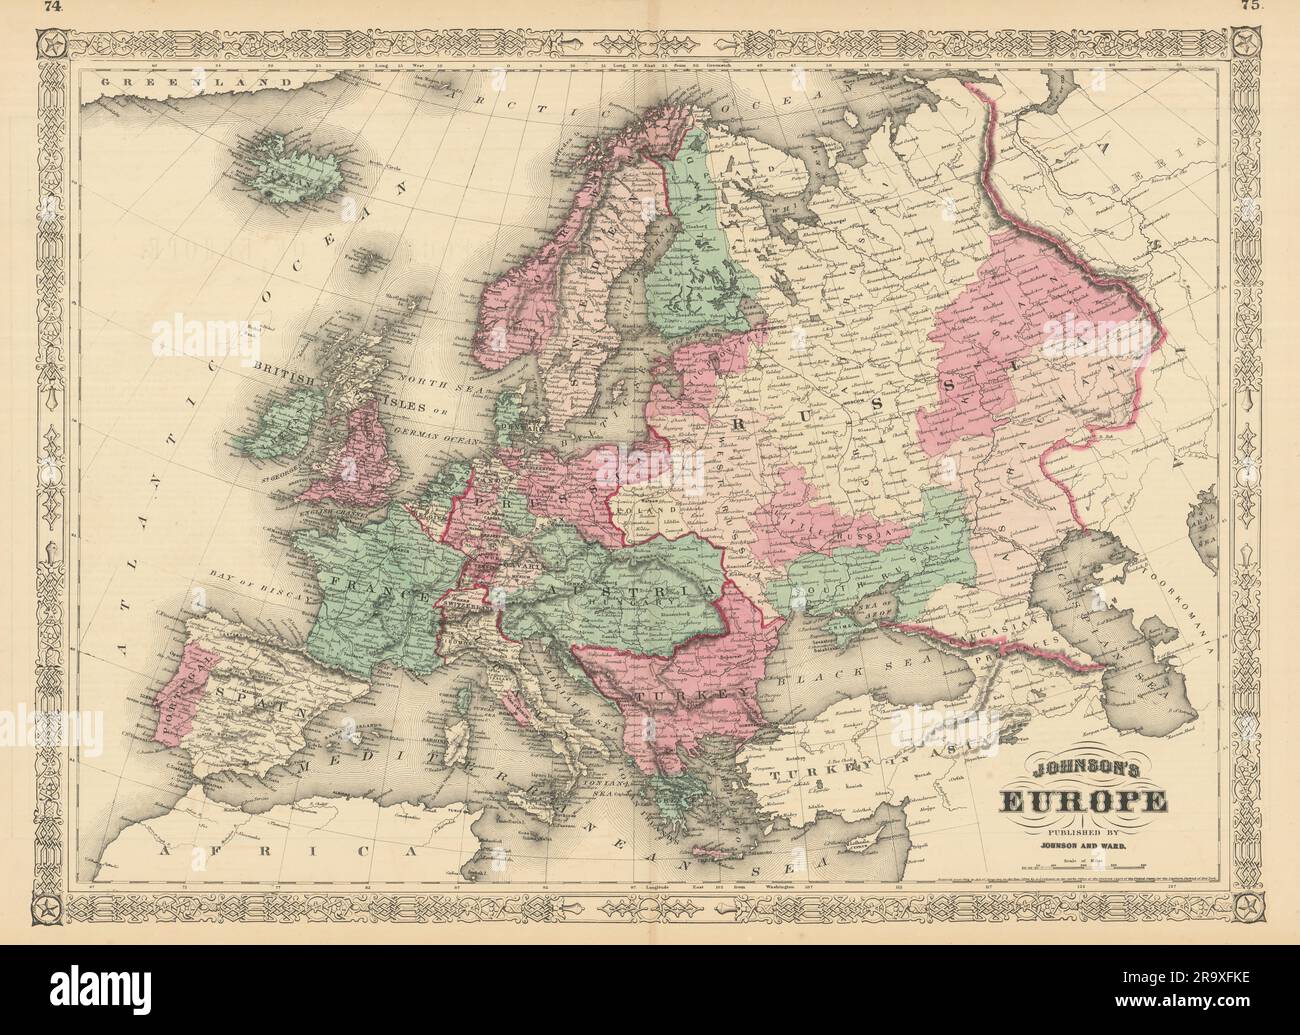 Johnsons Europa. Österreich Ungarn Preußen Türkei Papststaaten 1866 alte Karte Stockfoto